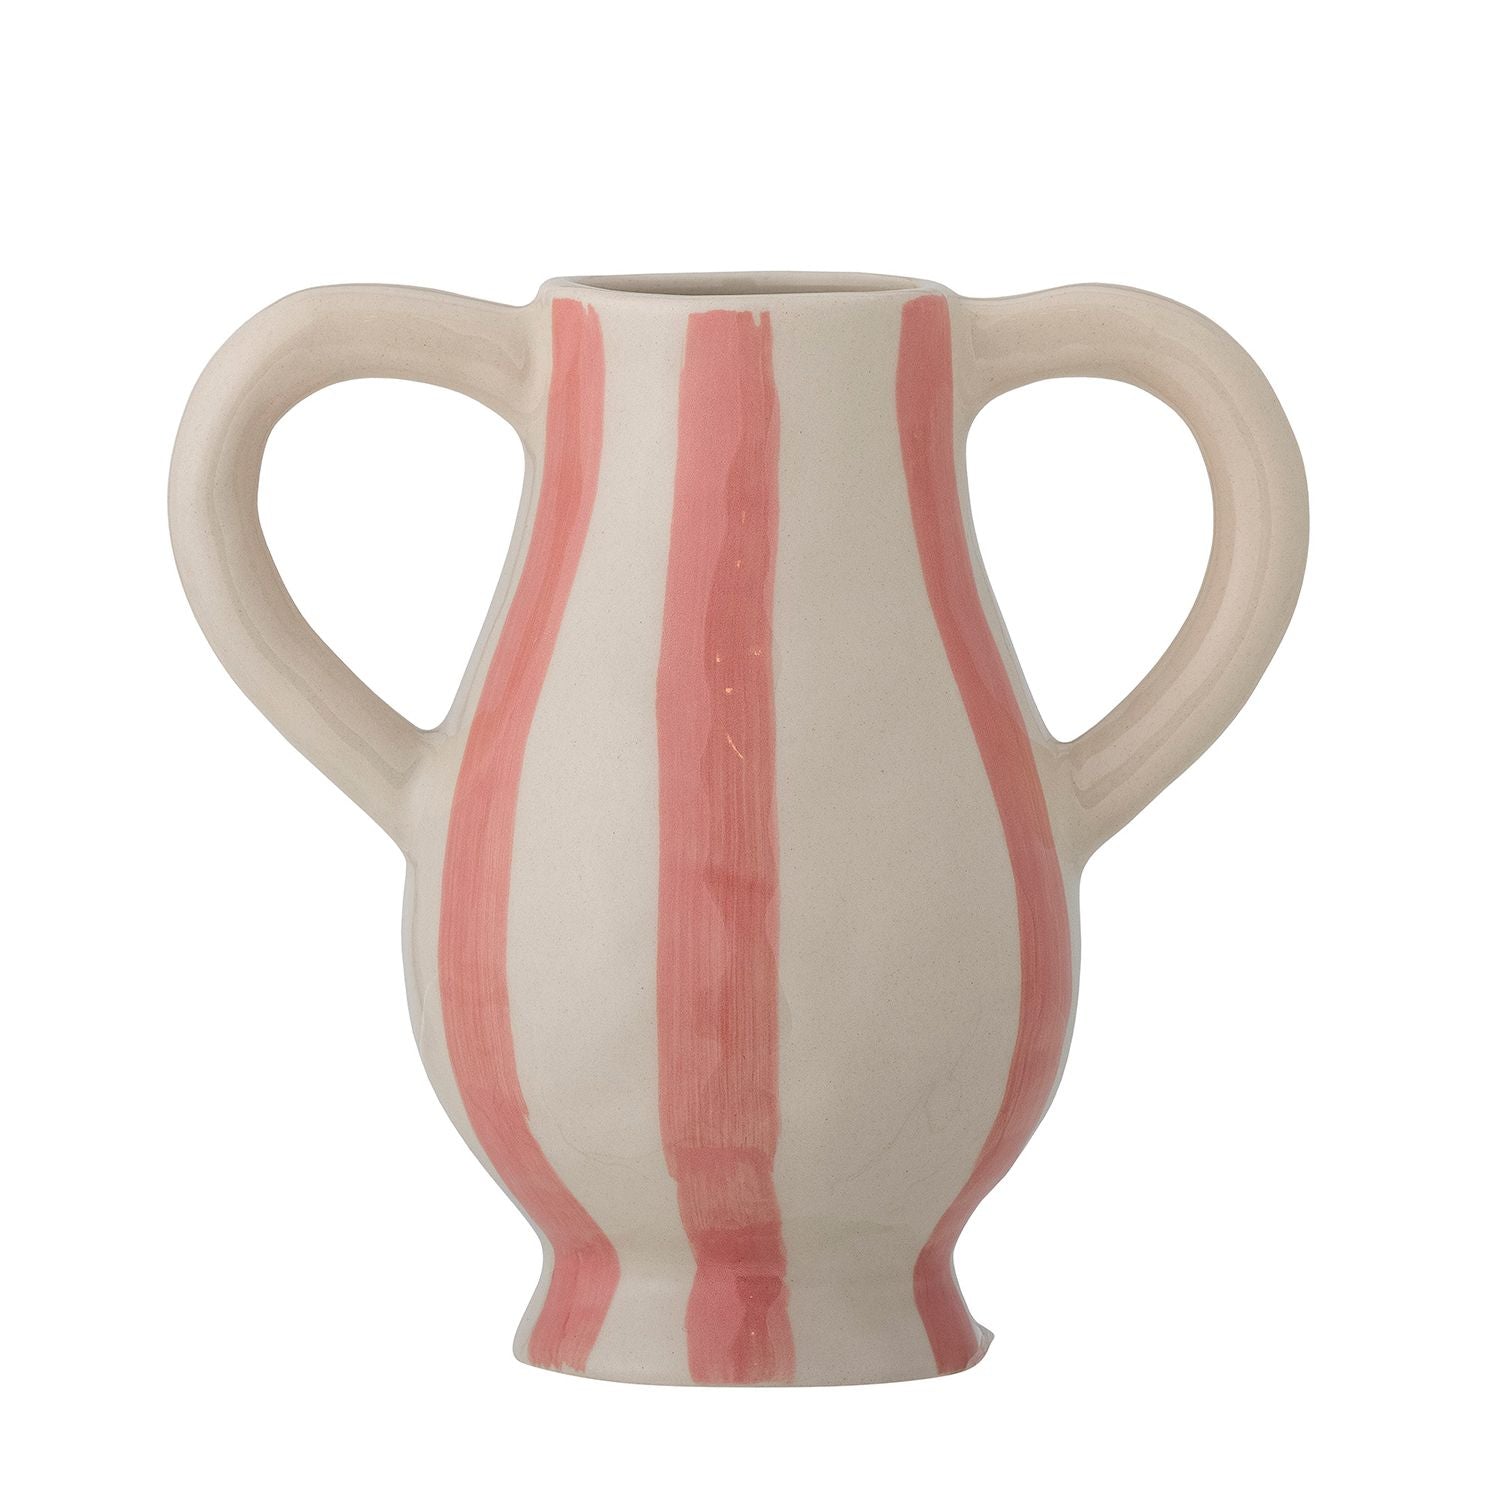 Binti Vase - Rose Stoneware